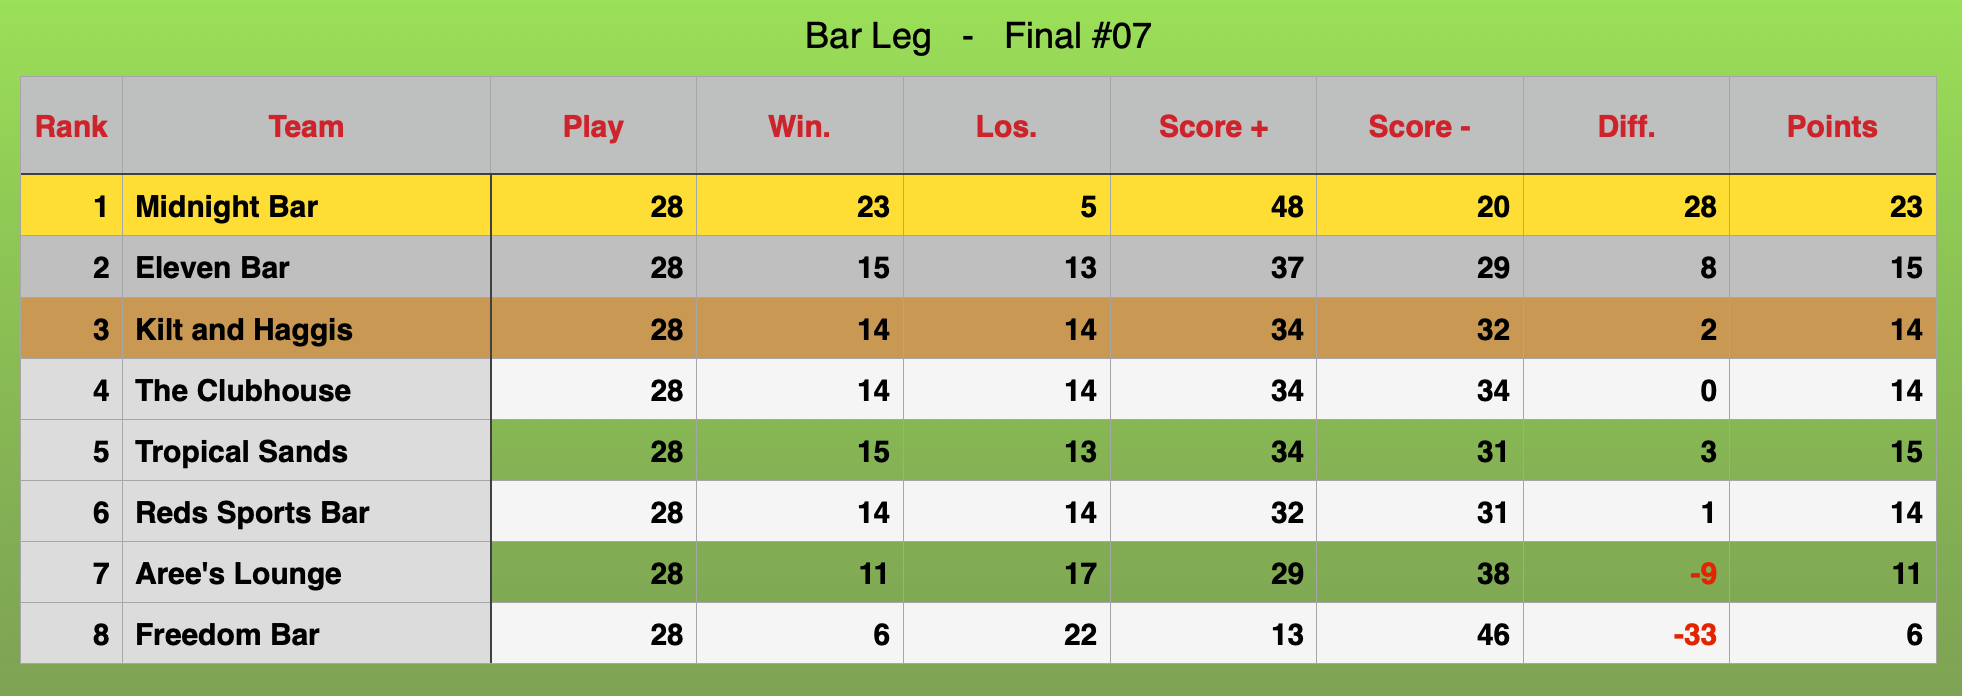 Bar leg Rankings